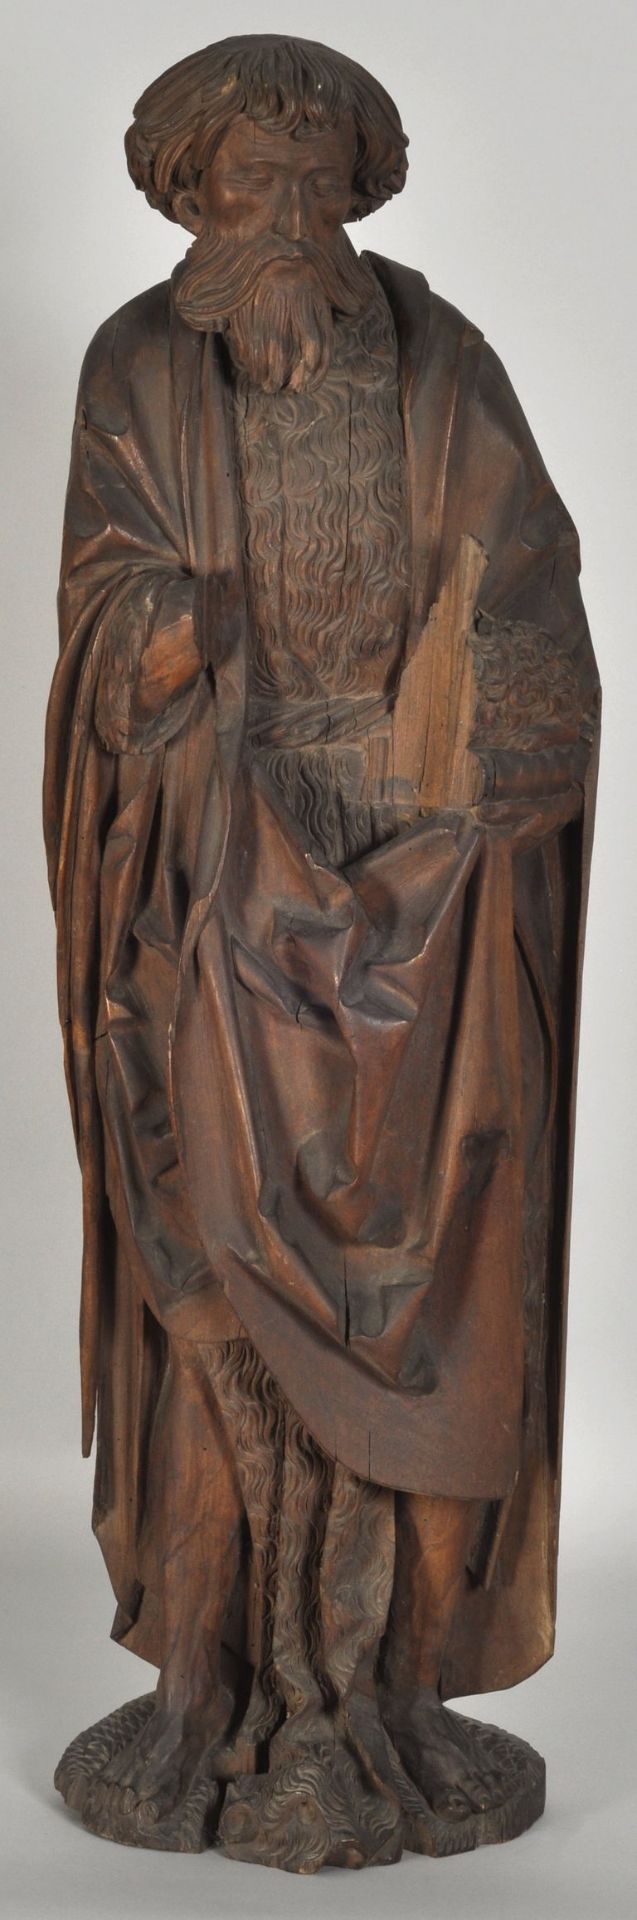 Johannes der Täufer, Ulm, Meister von Illerzell, um 1500Lindenholz, geschnitzt, Rückseite und Kopf